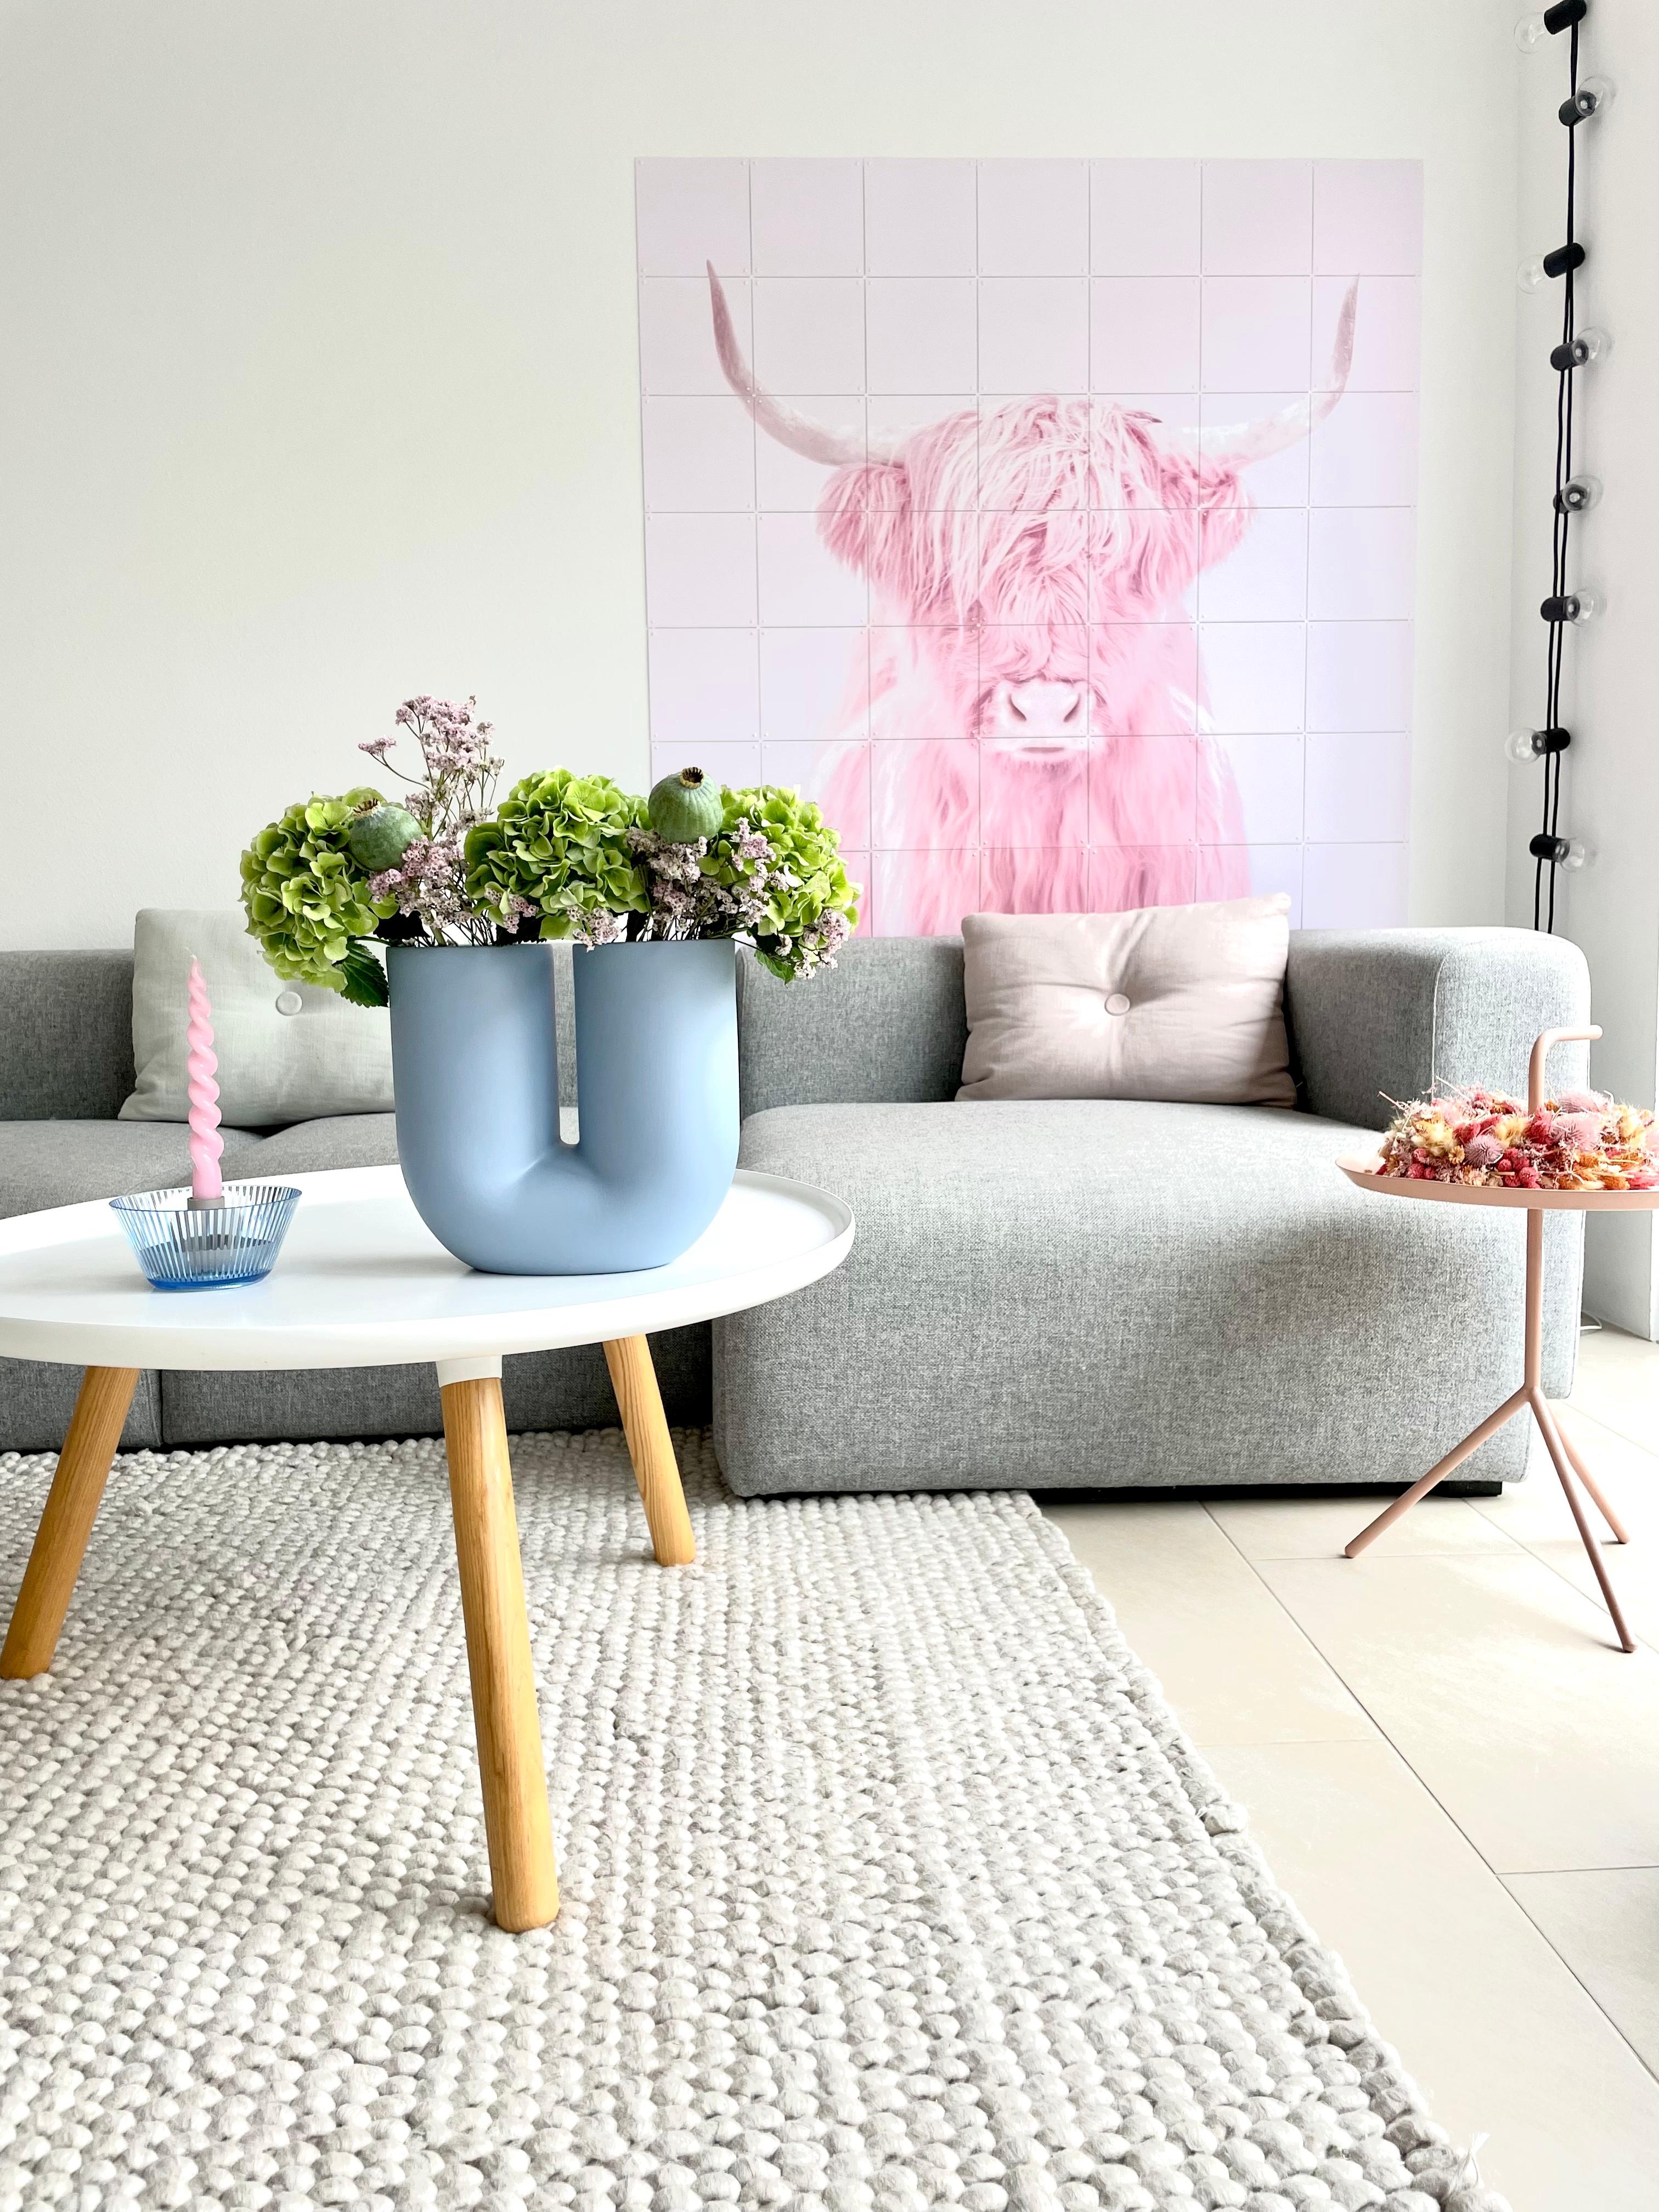 #wohnzimmer #deko #herbstdeko #herbststimmung #livingroom #wandgestaltung #herbst #hortensien 